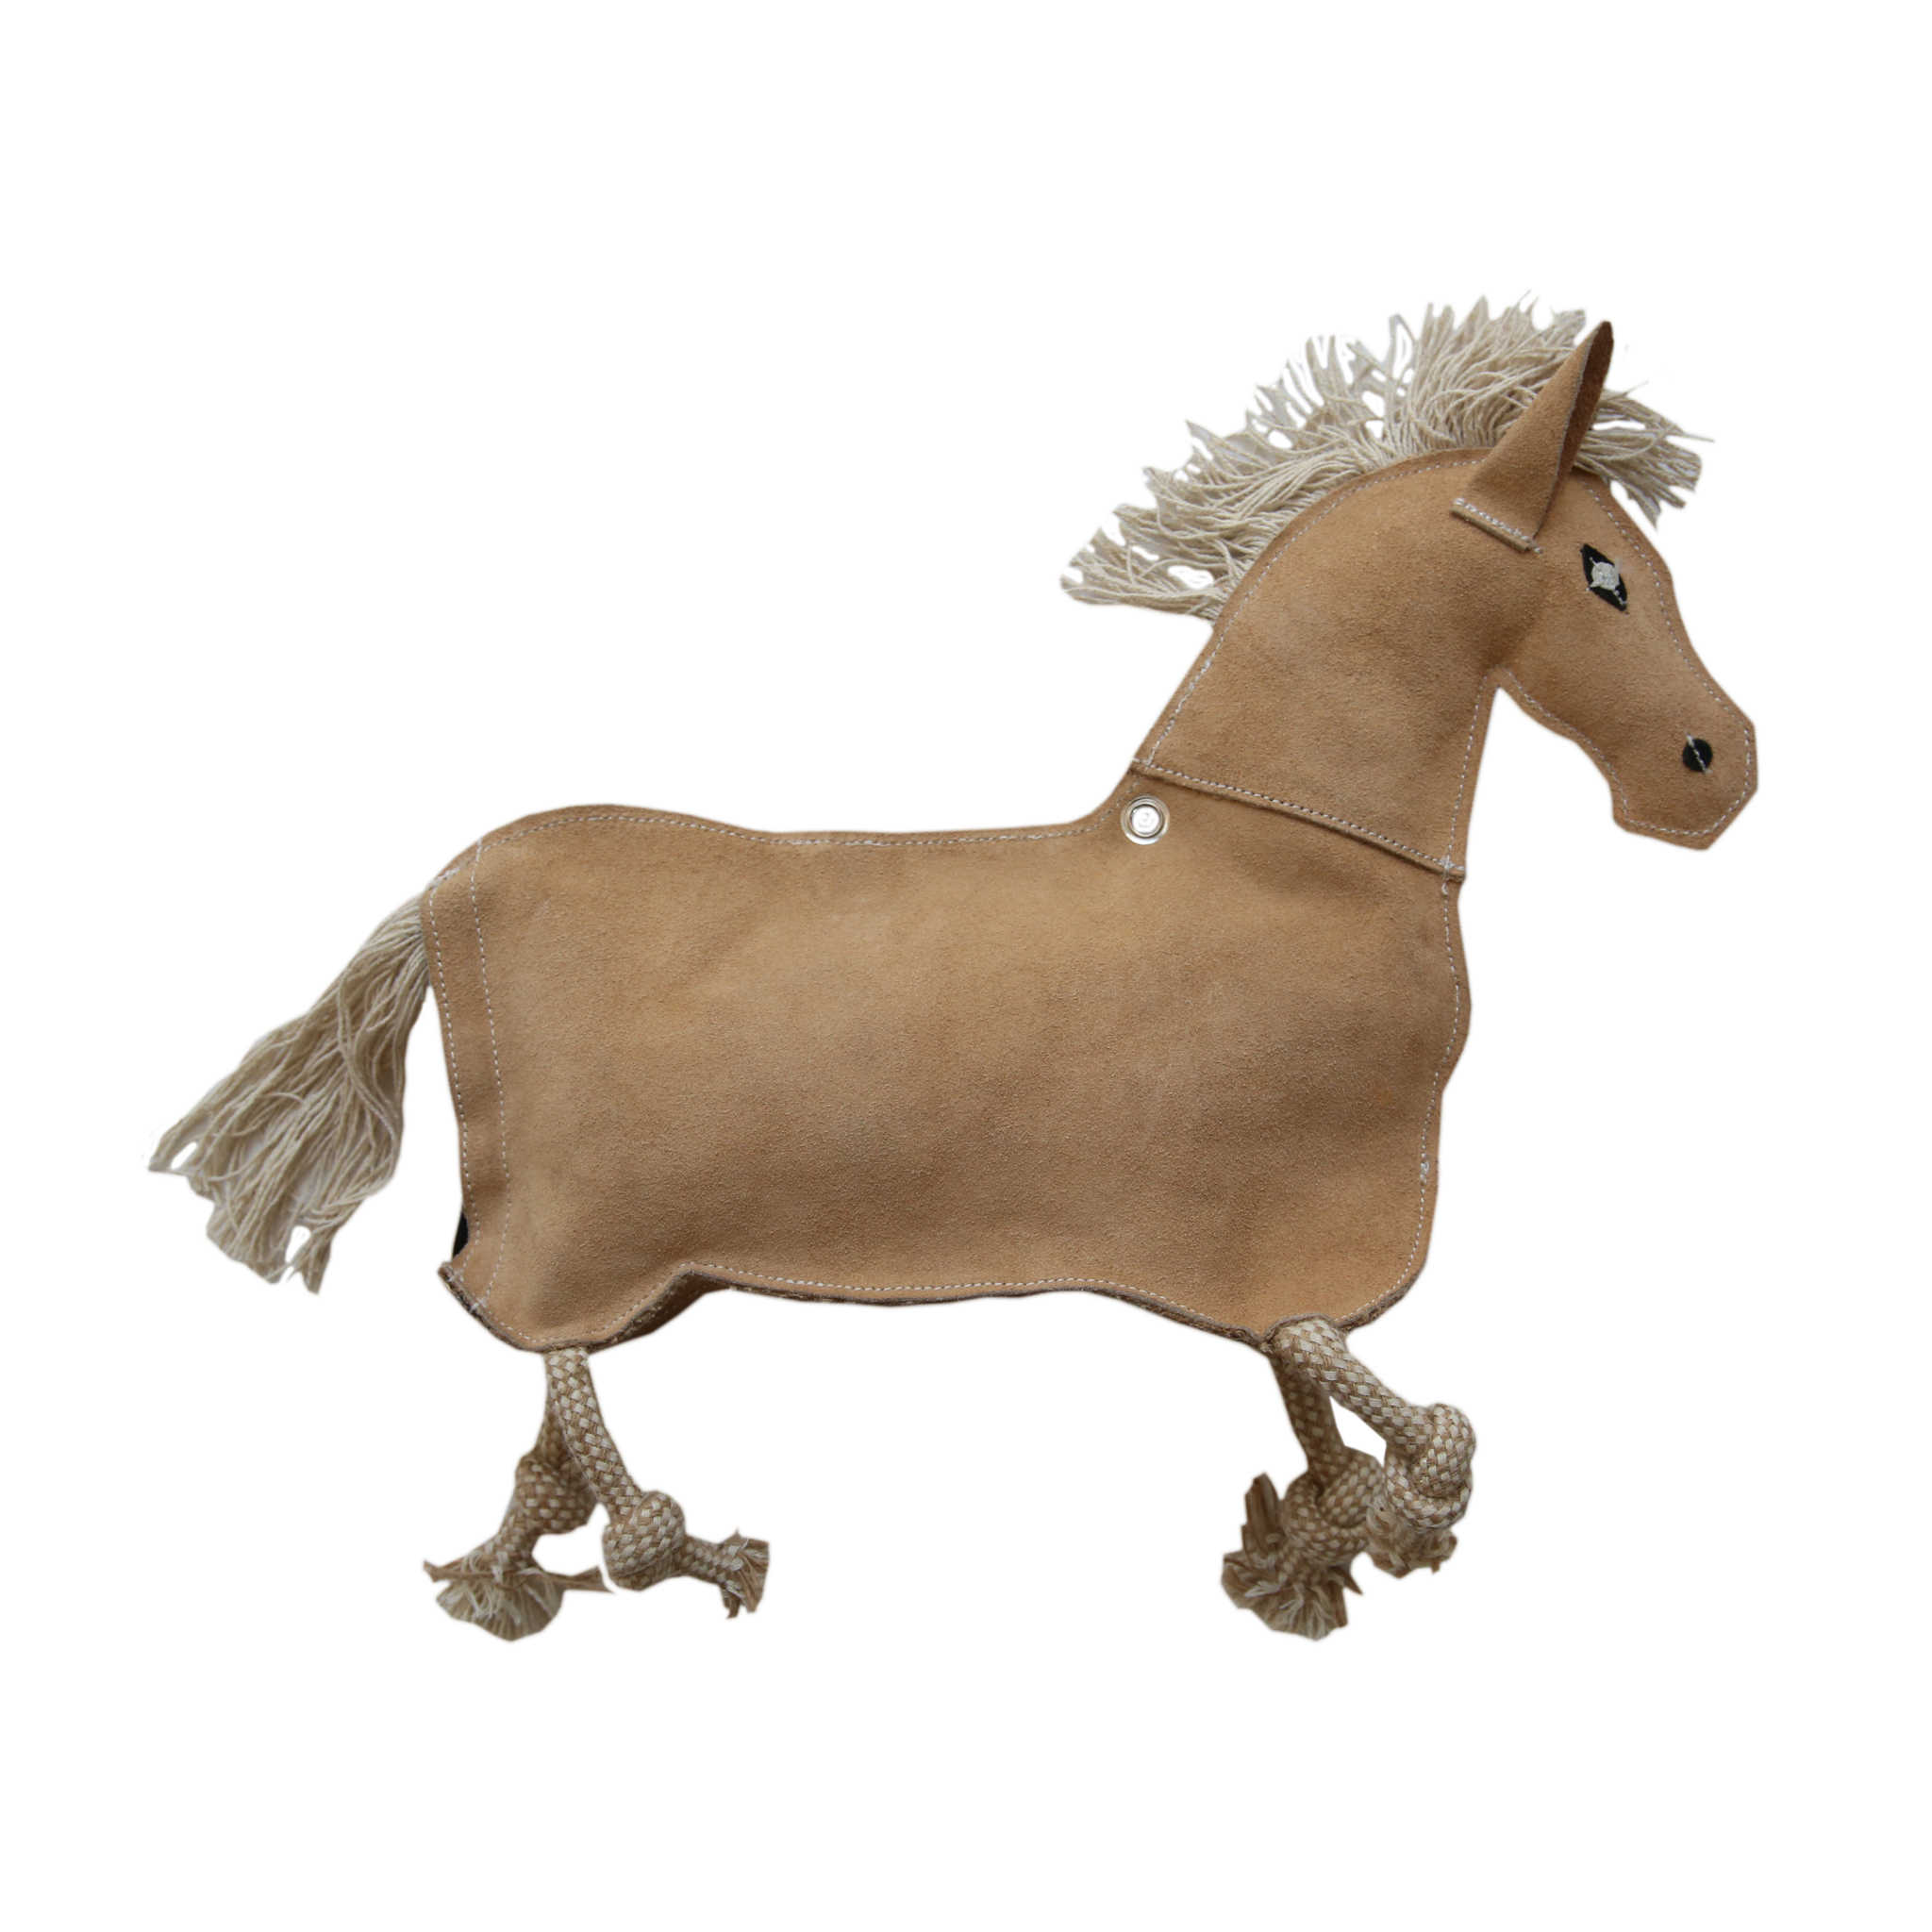 KENTUCKY Pferdespielzeug Relax Horse Toy Pony - braun - Stck. - 2